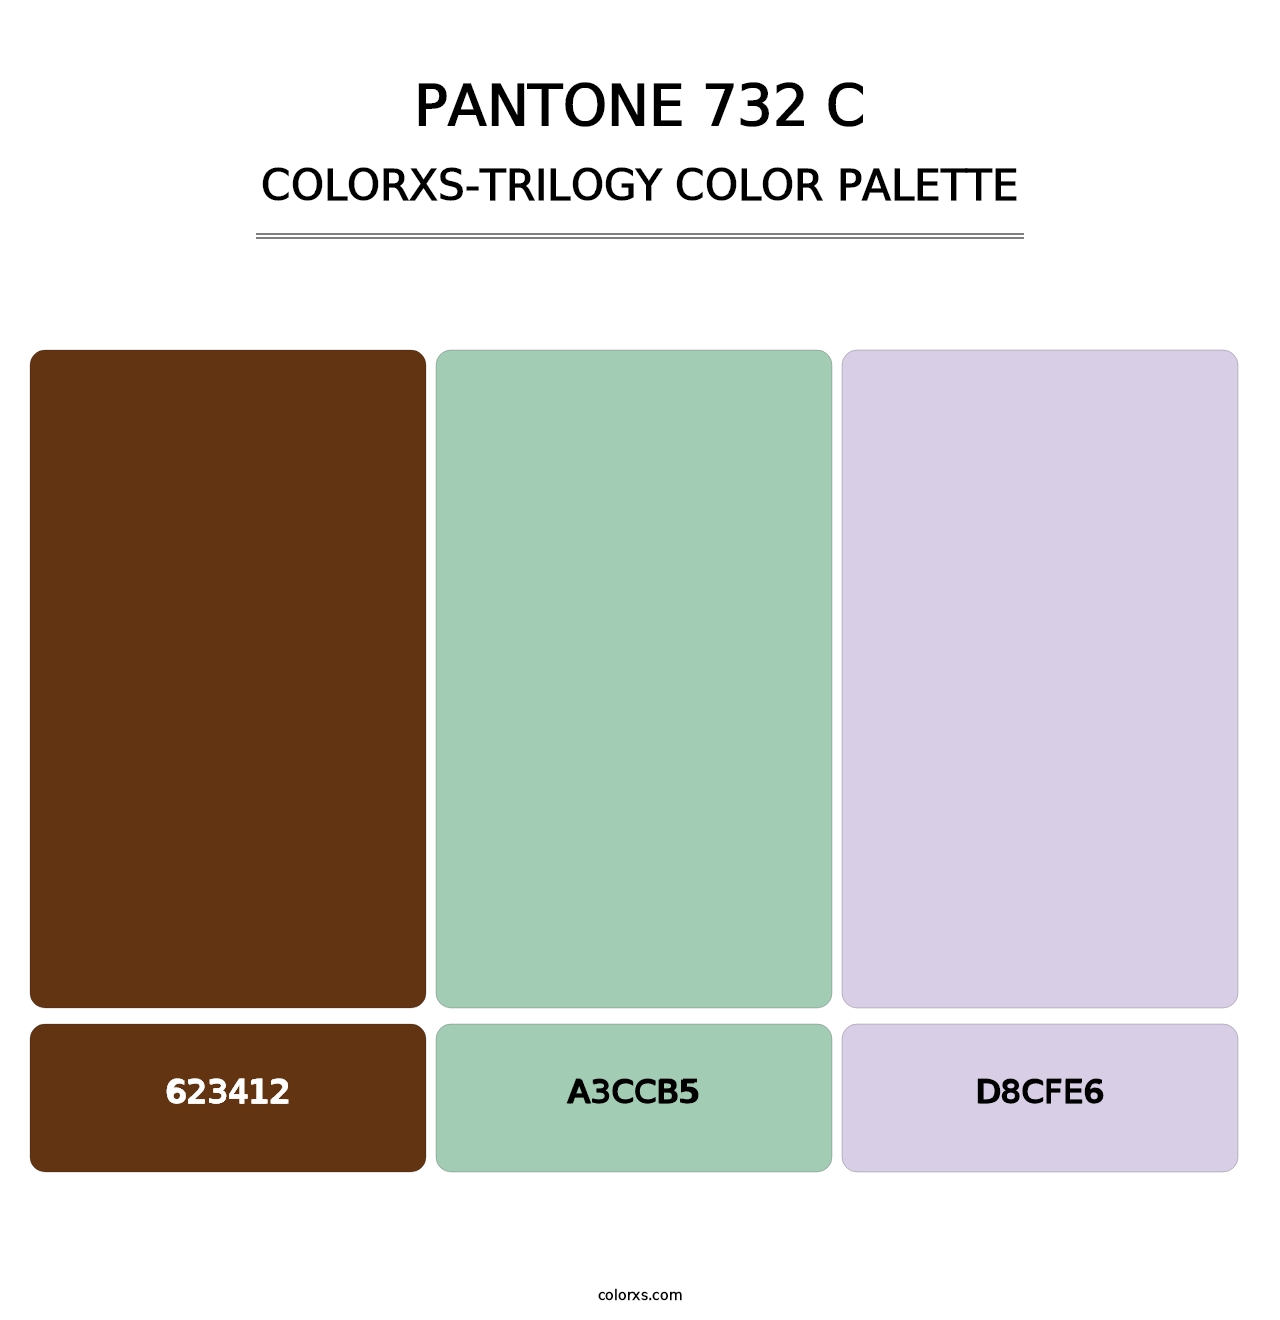 PANTONE 732 C - Colorxs Trilogy Palette